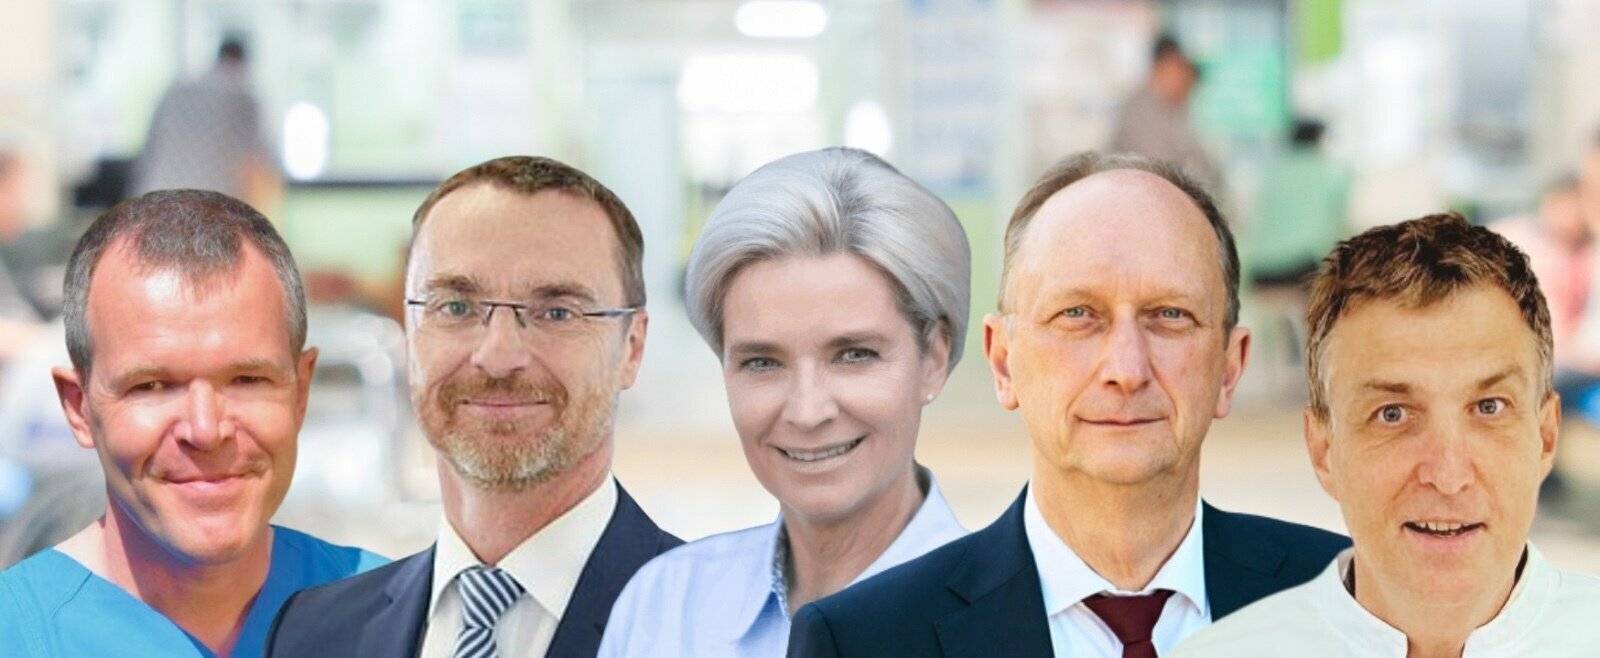 Wiener trifft Gesundheitsexperten zur öffentlichen Diskussion